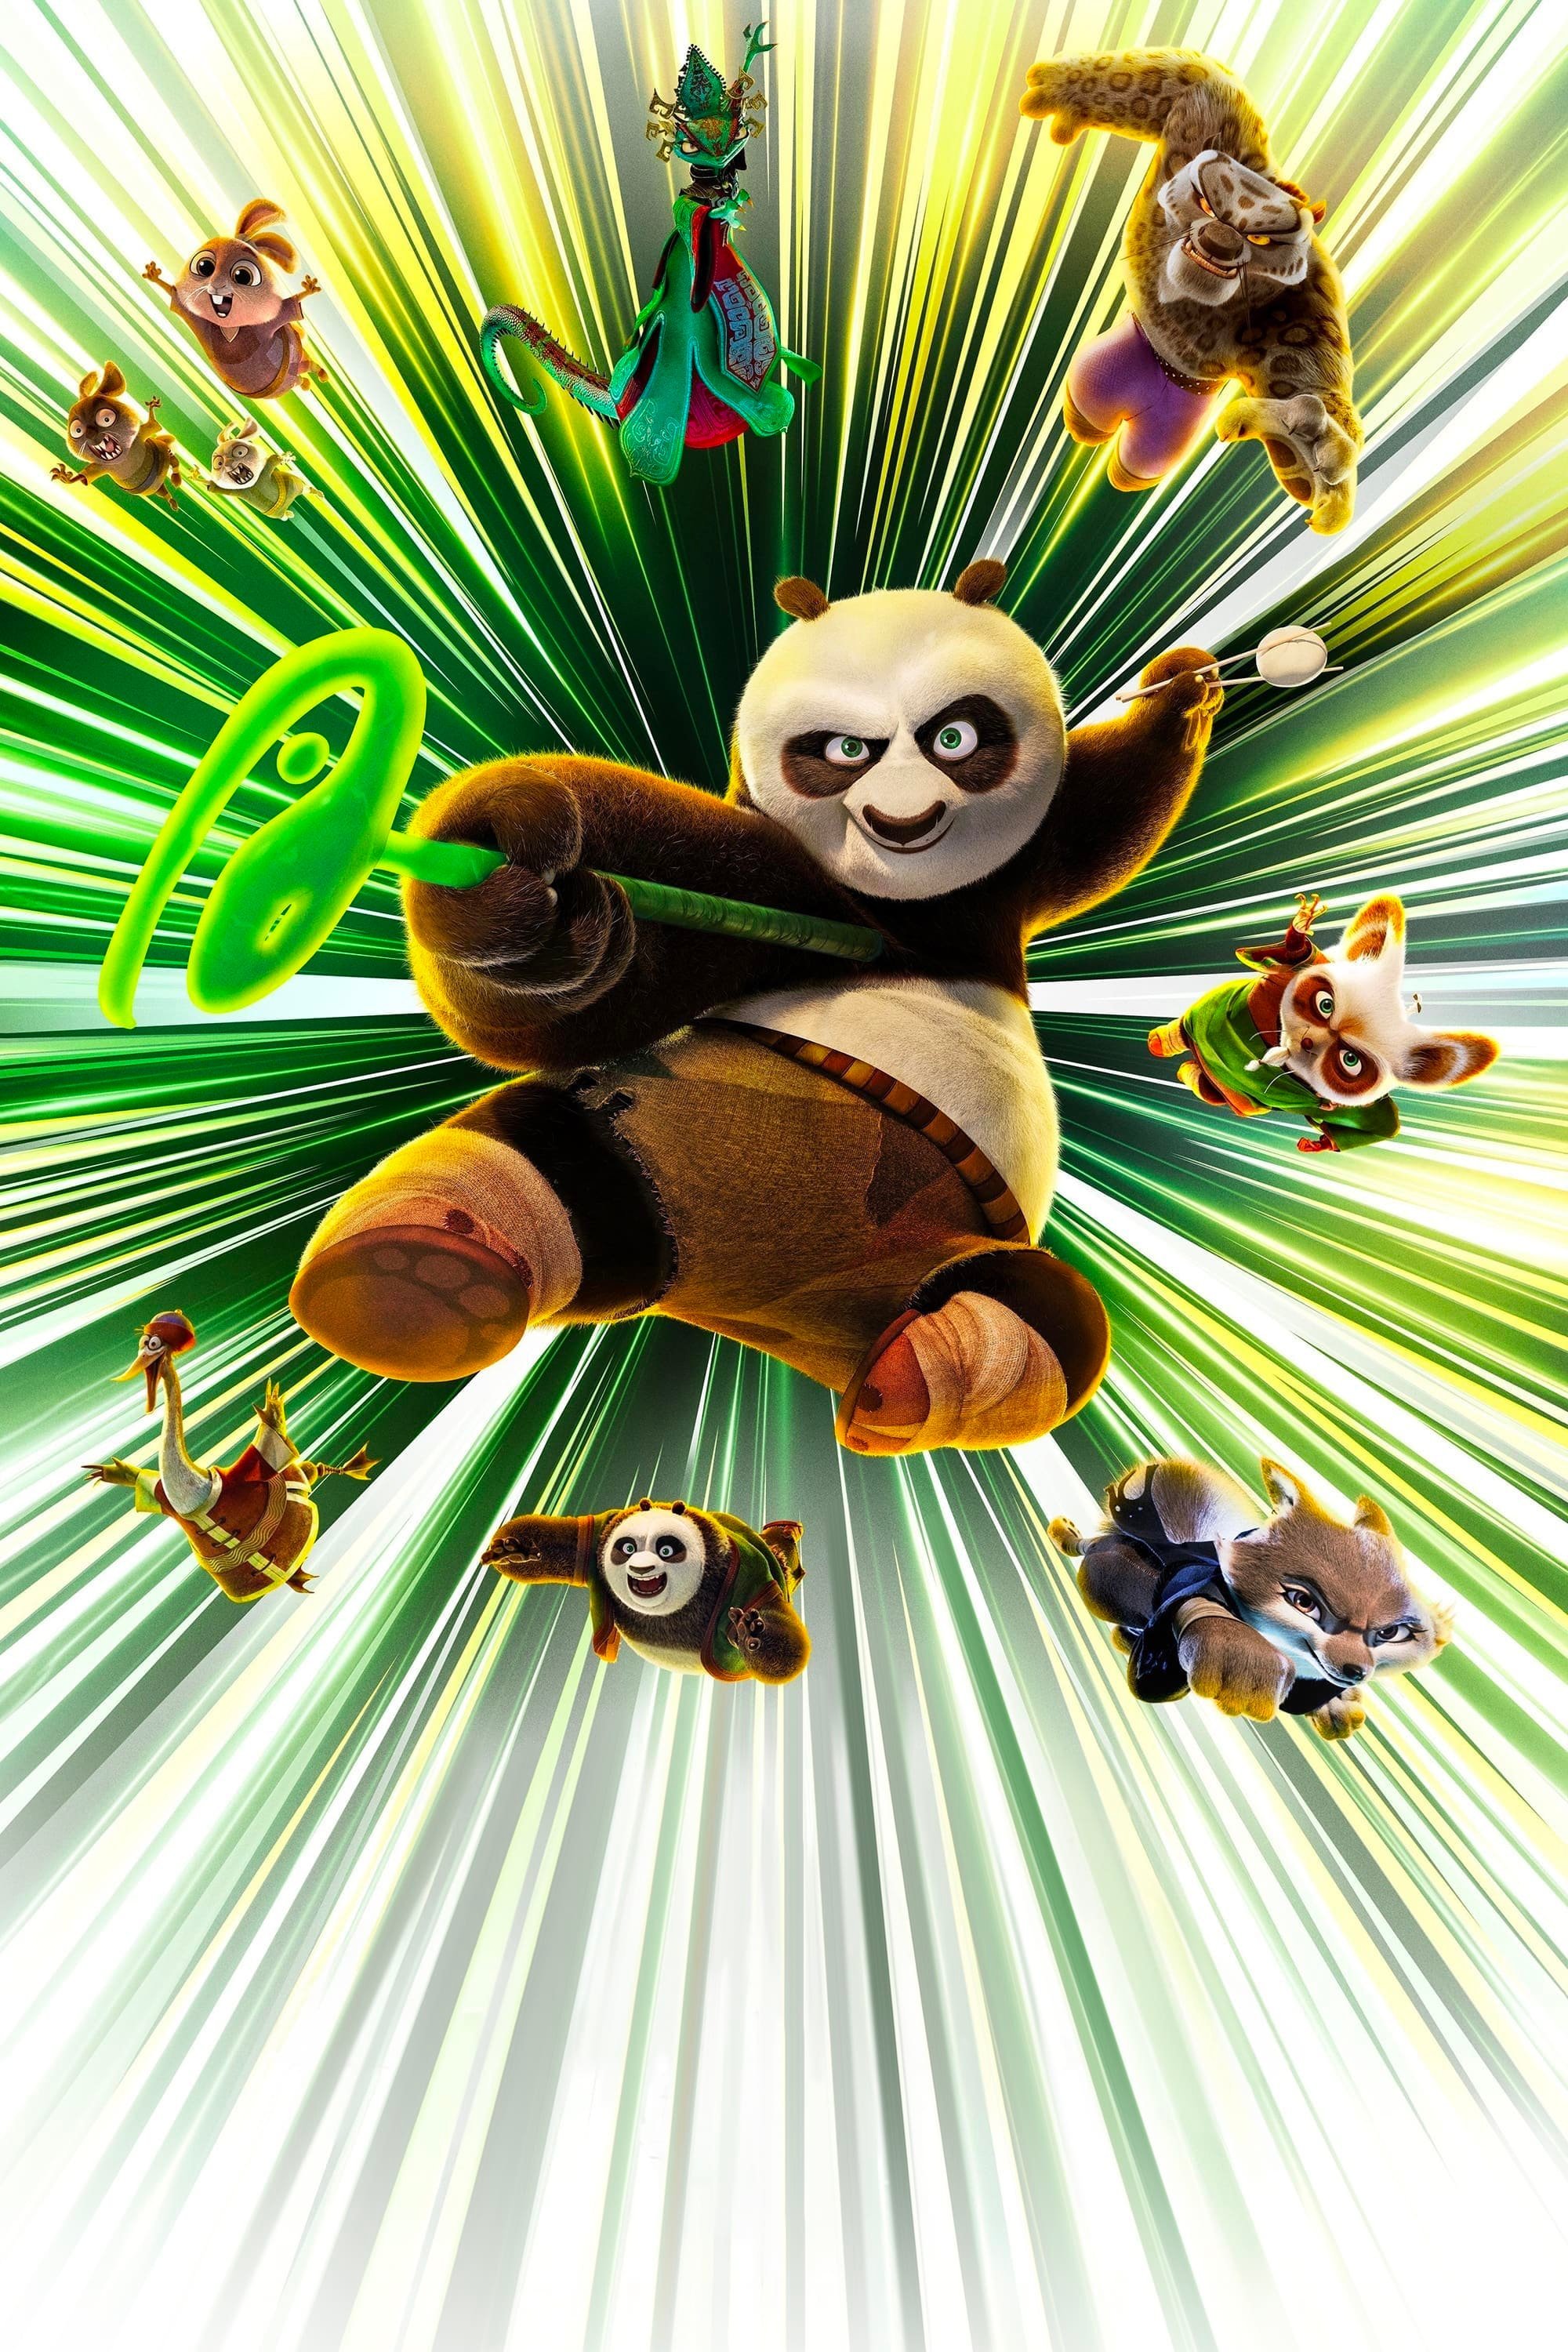 《功夫熊猫4》全球票房现已突破5亿美元